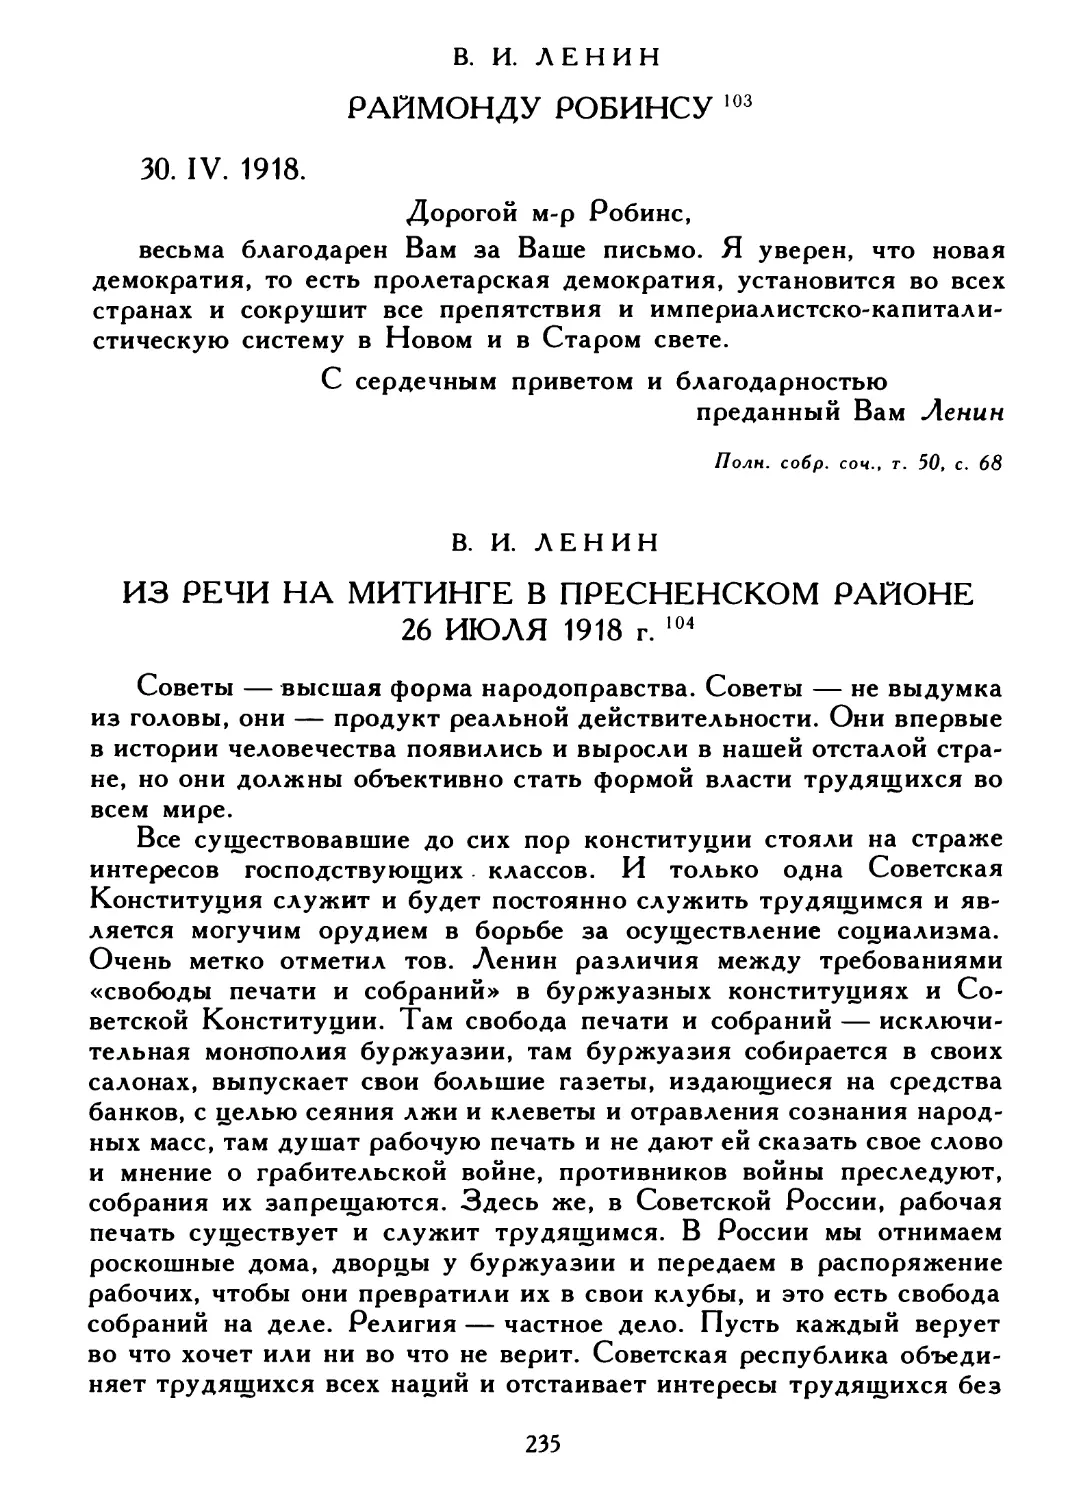 В. И. Ленин. Раймонду Робинсу, 30 апреля 1918 г.